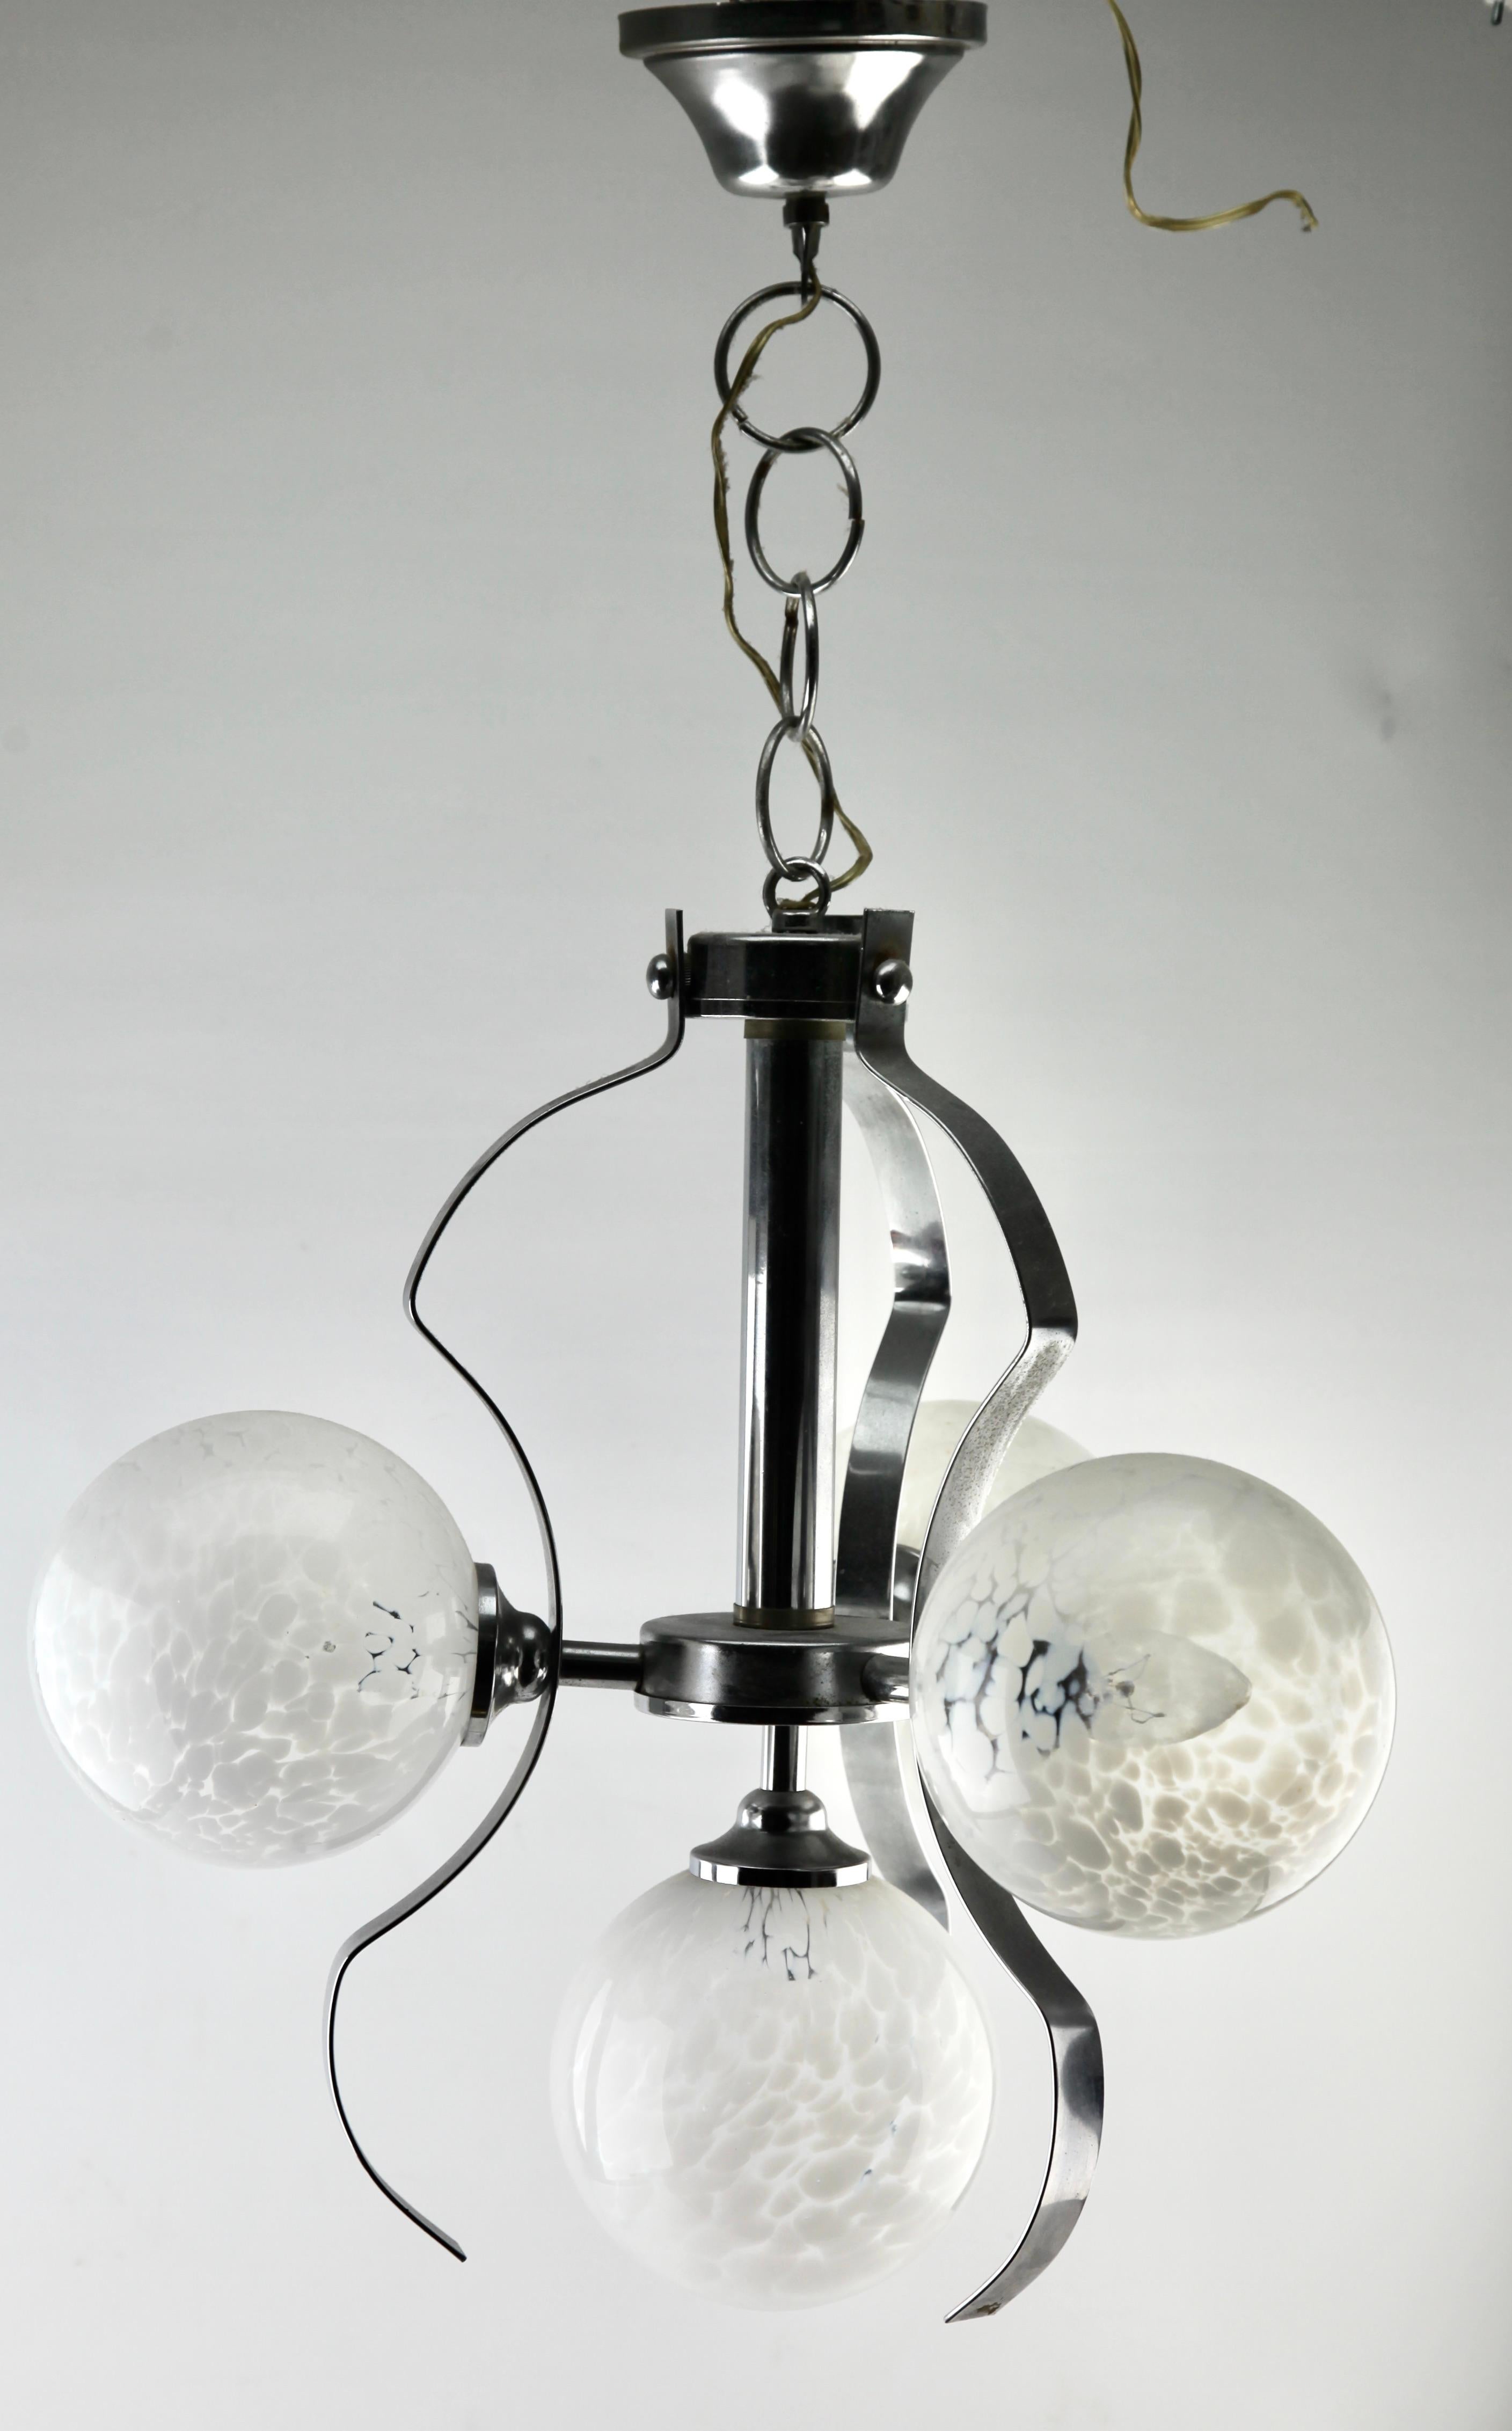 Issu de la gamme de la société Fischer Leuchten, ce centre d'éclairage comporte cinq lampes (disposées en deux paires) sur une tige centrale chromée. Chaque lampe est munie d'une armature sur une plaque chromée et d'un abat-jour rond et globulaire